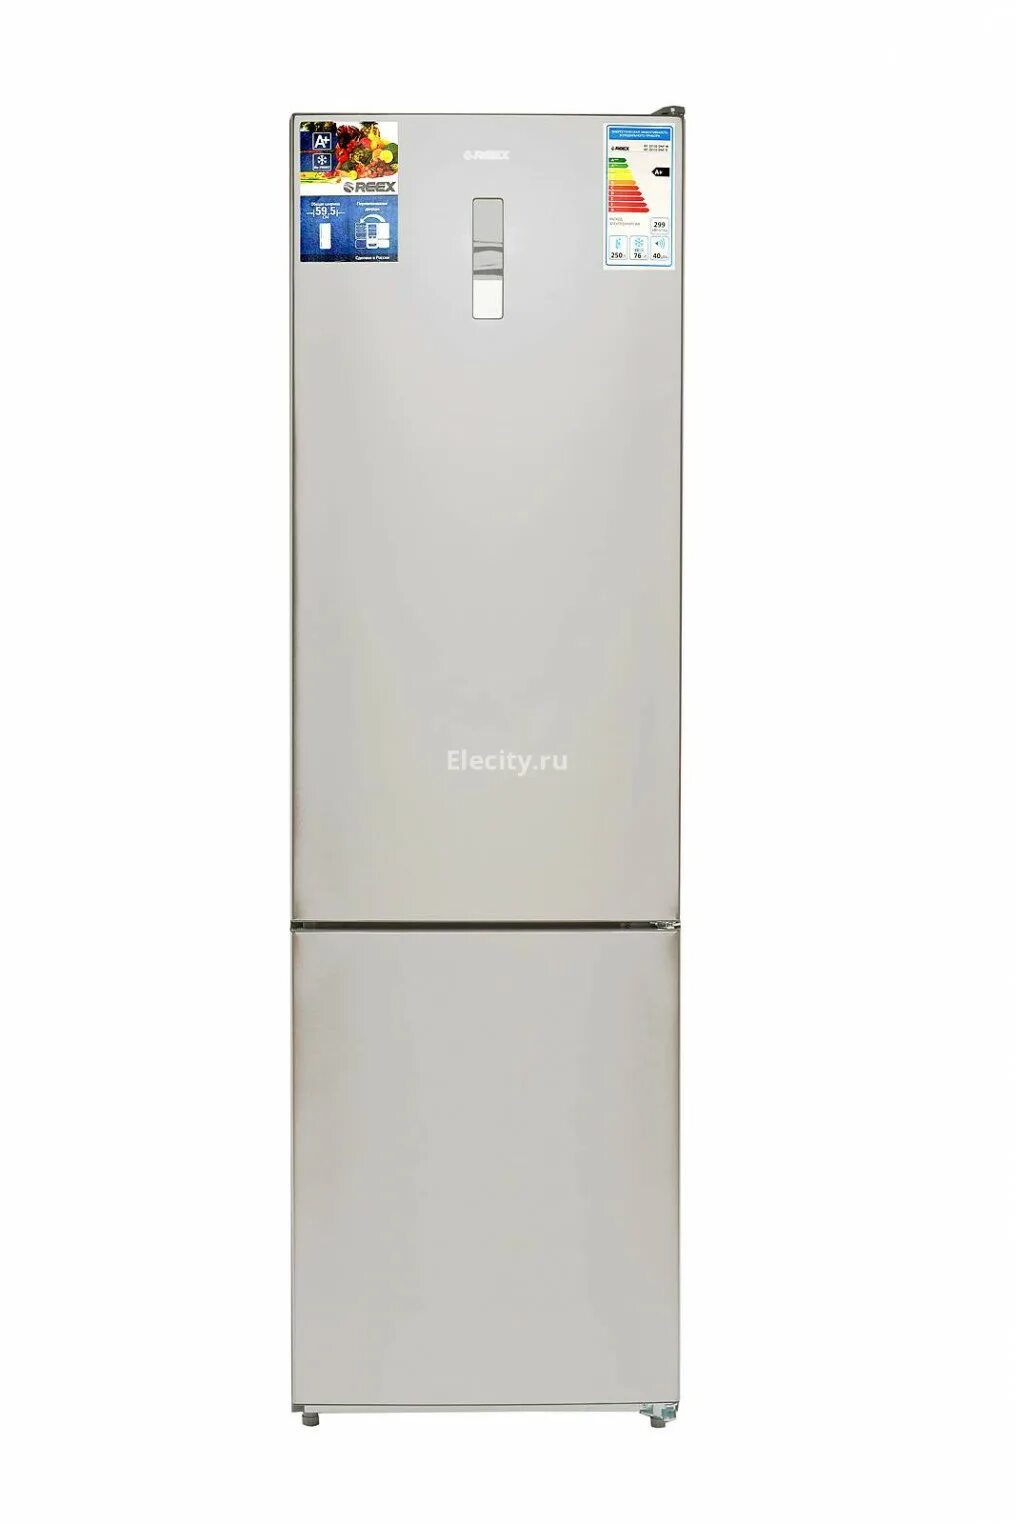 REEX холодильники. Candy холодильник 90см. Холодильник сони двухкамерный. Новые модели холодильников